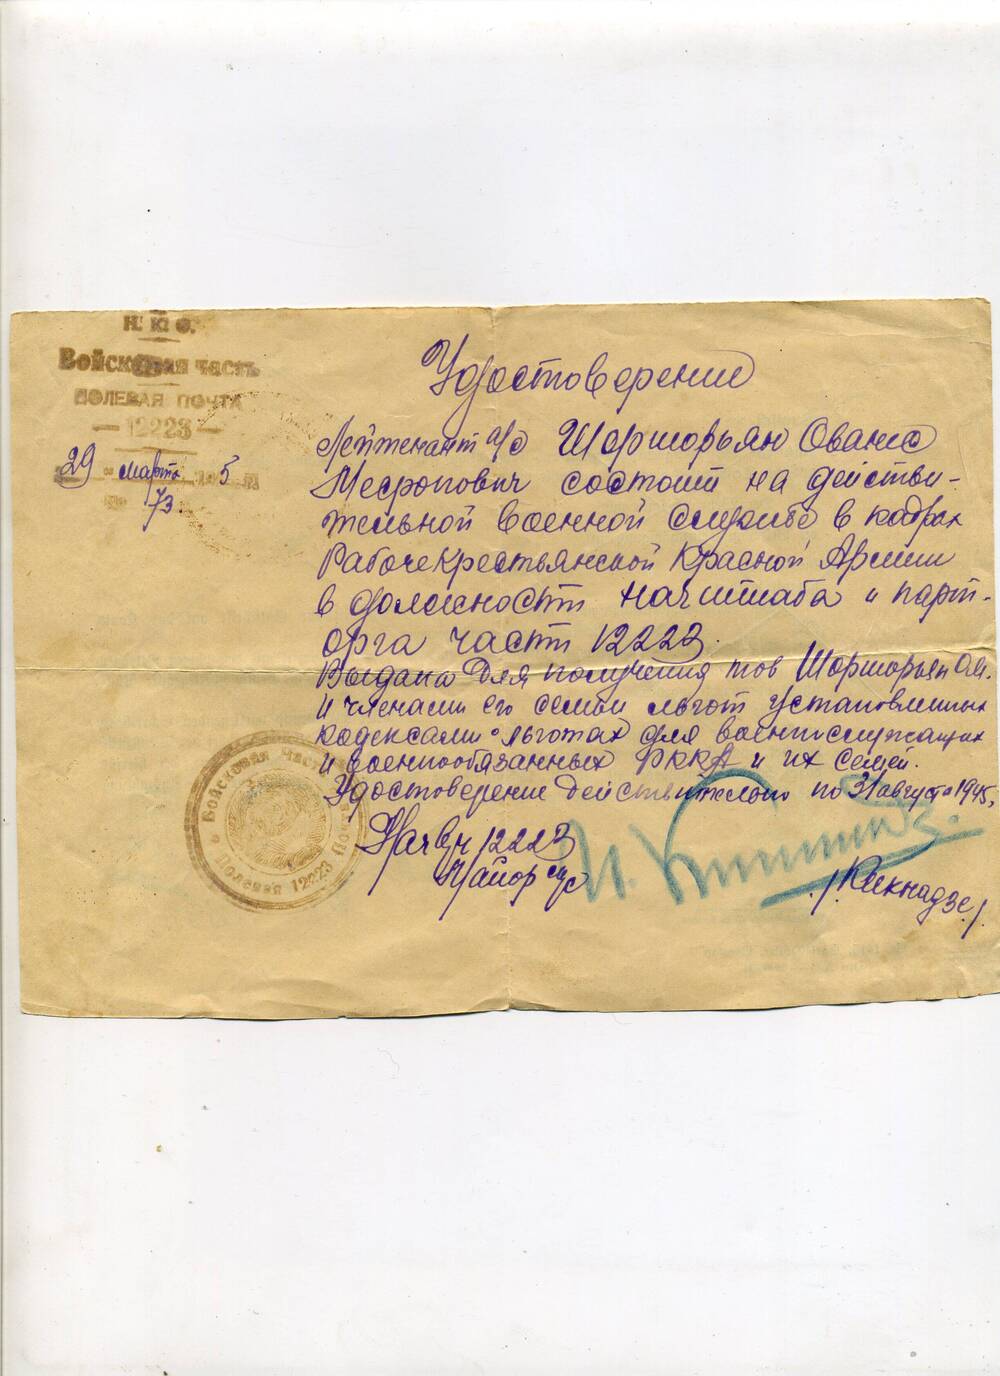 Удостоверение начальника штаба и парторга части 12223 О.М. Шоршорьян Март-август 1945 г.